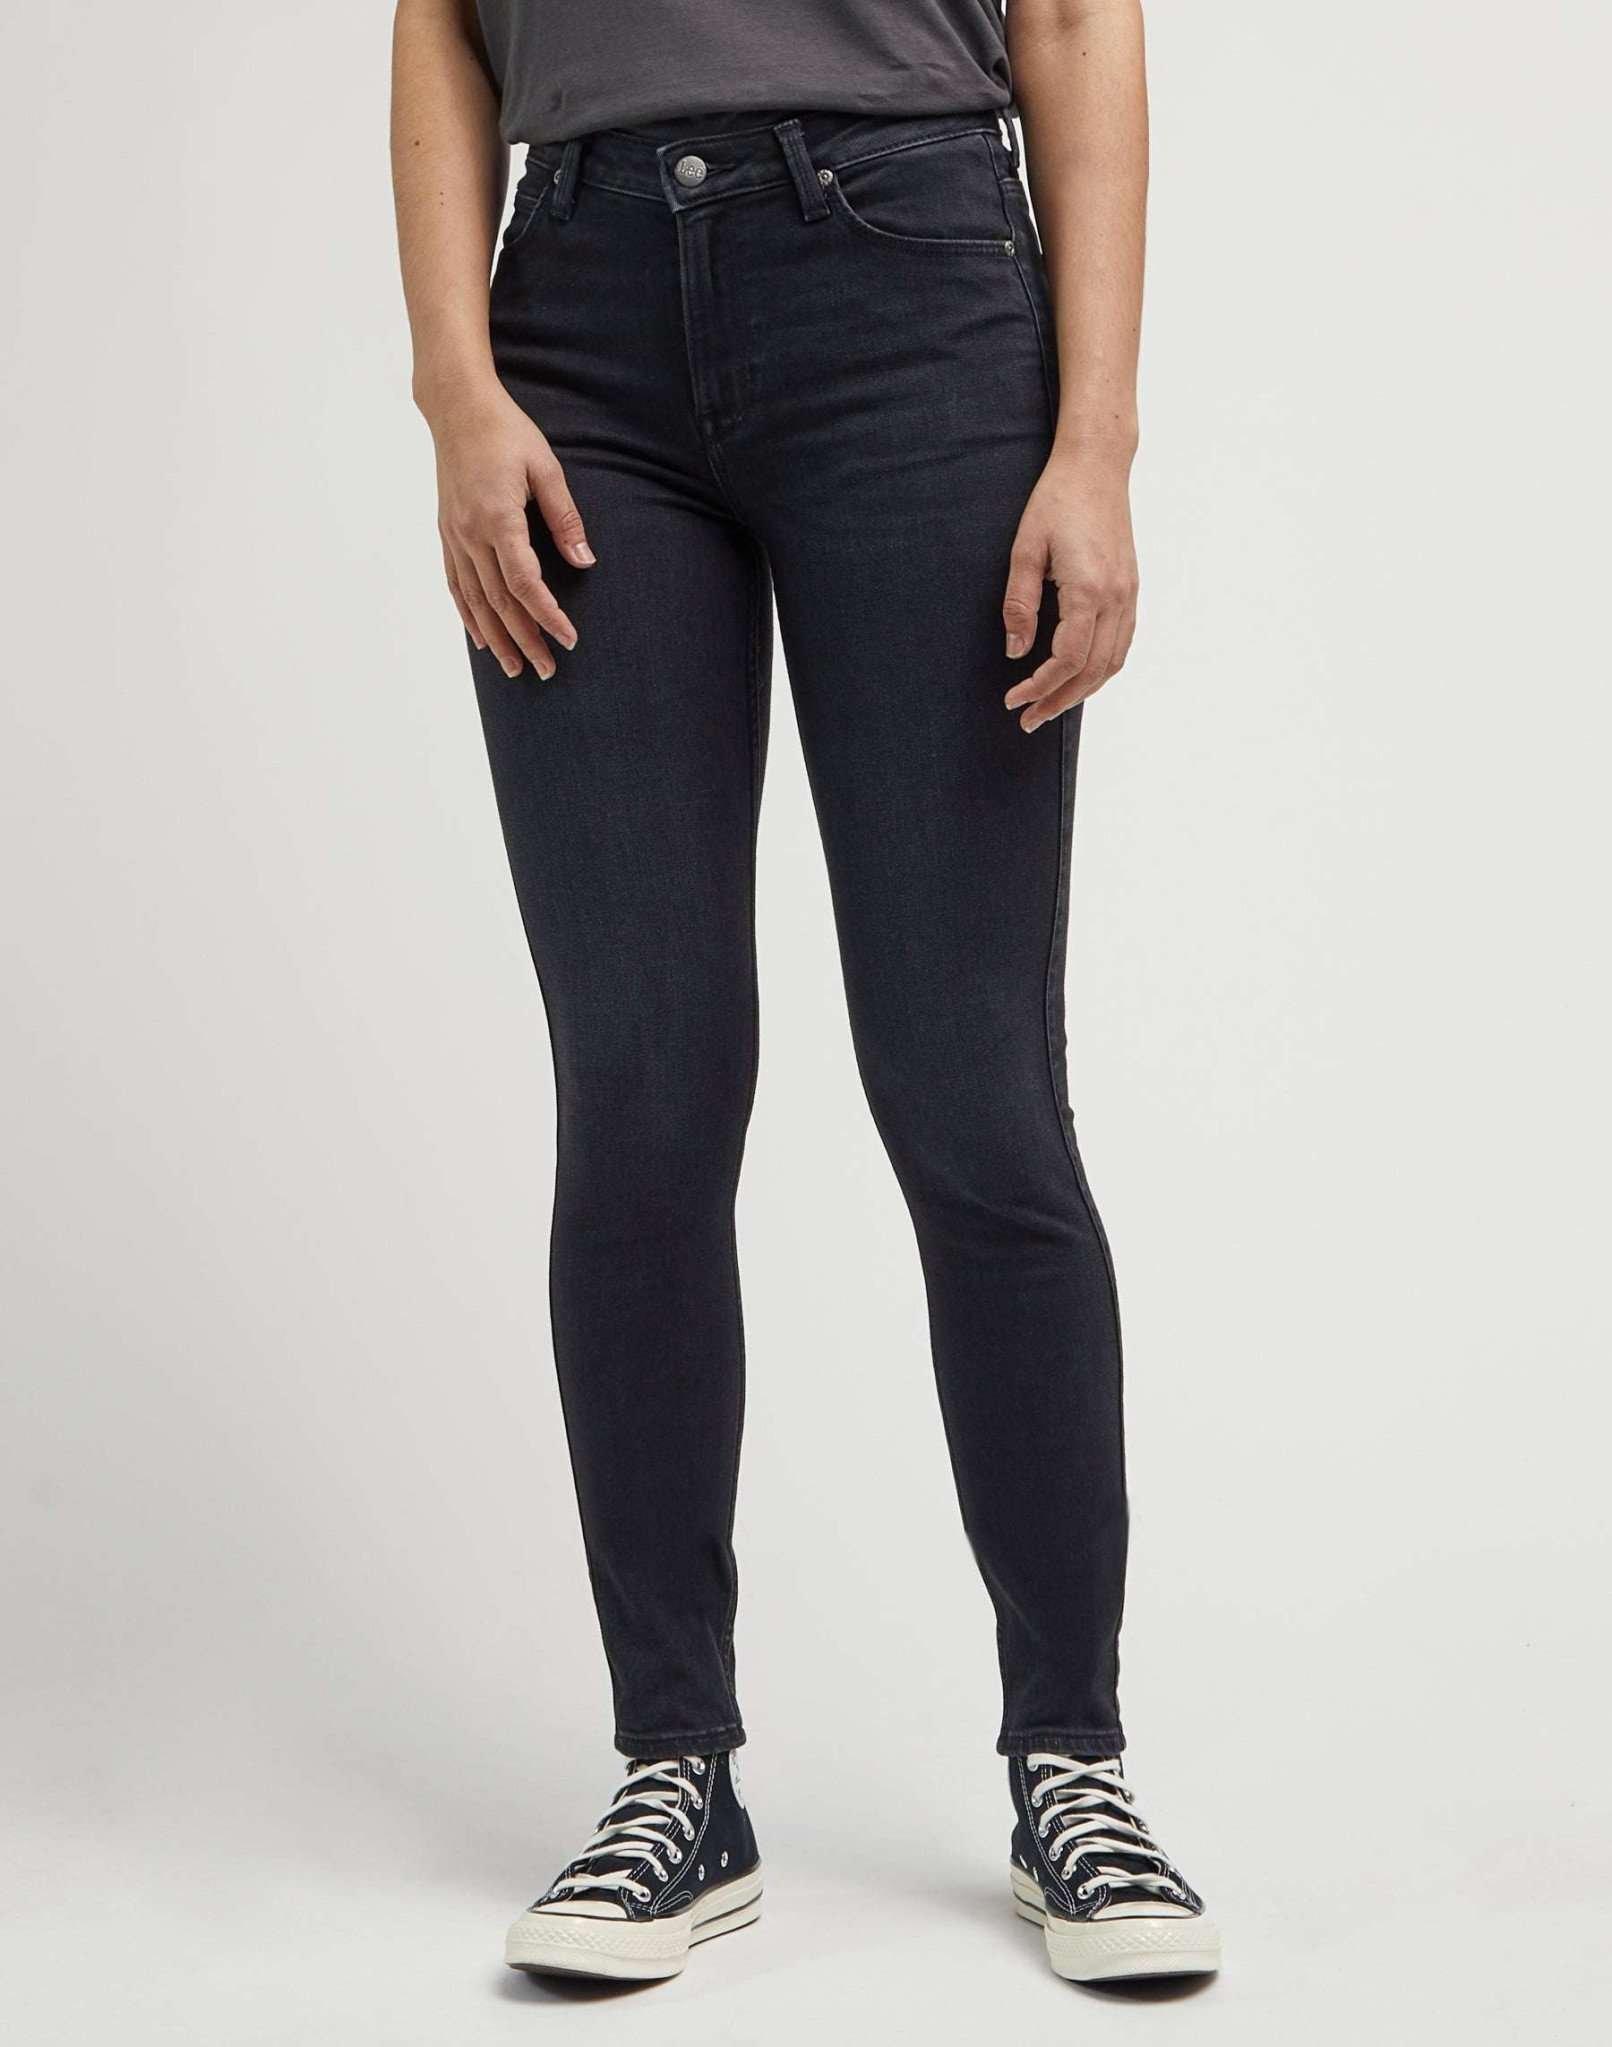 Jeans Skinny Fit Scarlett High Damen Schwarz L31/W25 von Lee